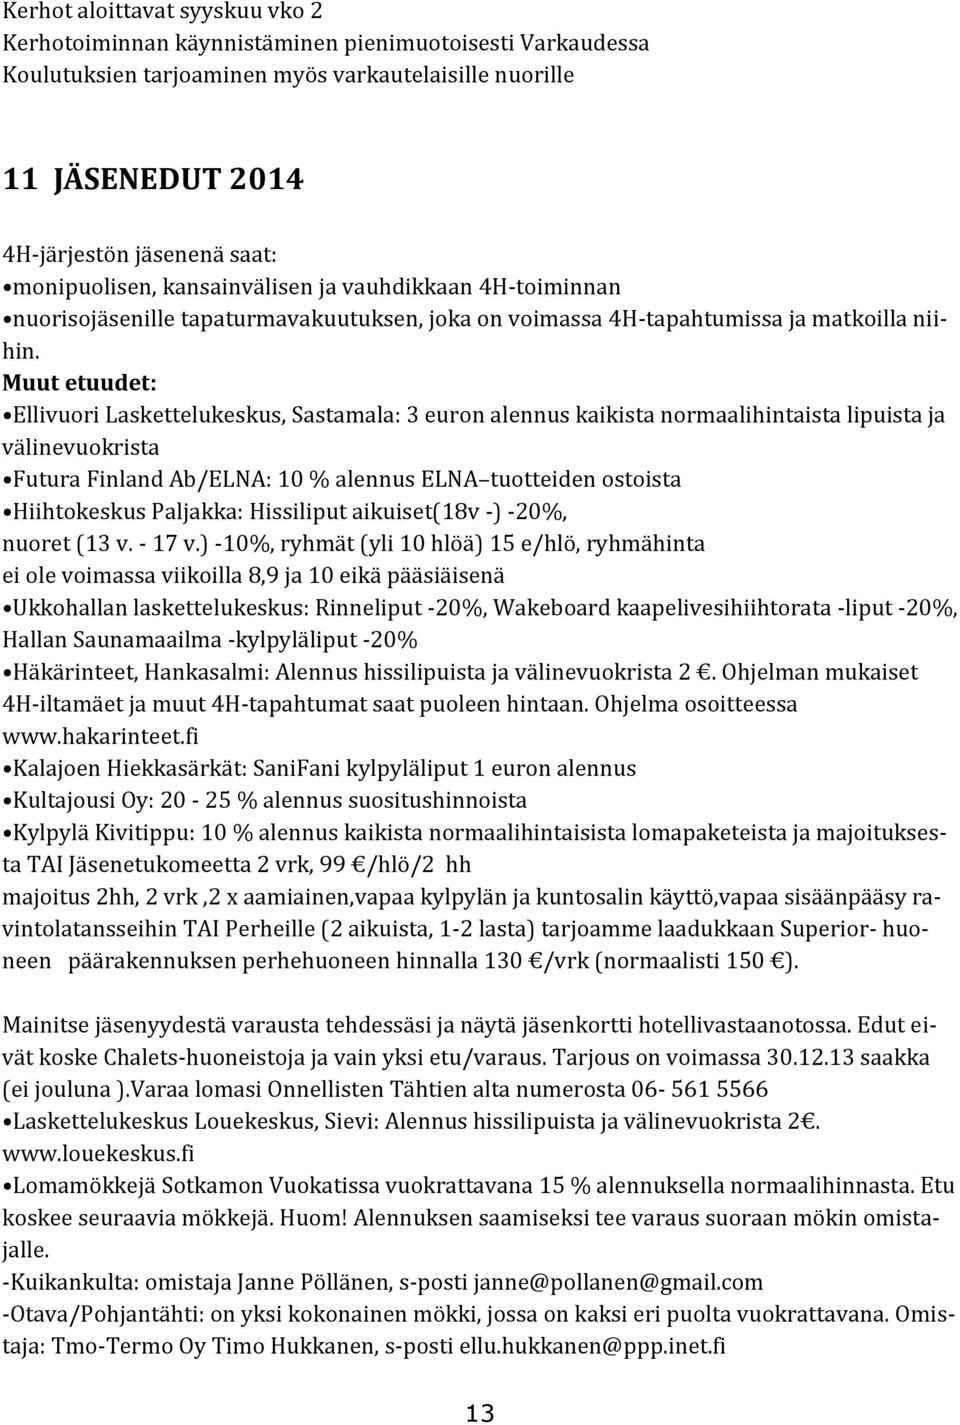 Muut etuudet: Ellivuori Laskettelukeskus, Sastamala: 3 euron alennus kaikista normaalihintaista lipuista ja välinevuokrista Futura Finland Ab/ELNA: 10 % alennus ELNA tuotteiden ostoista Hiihtokeskus